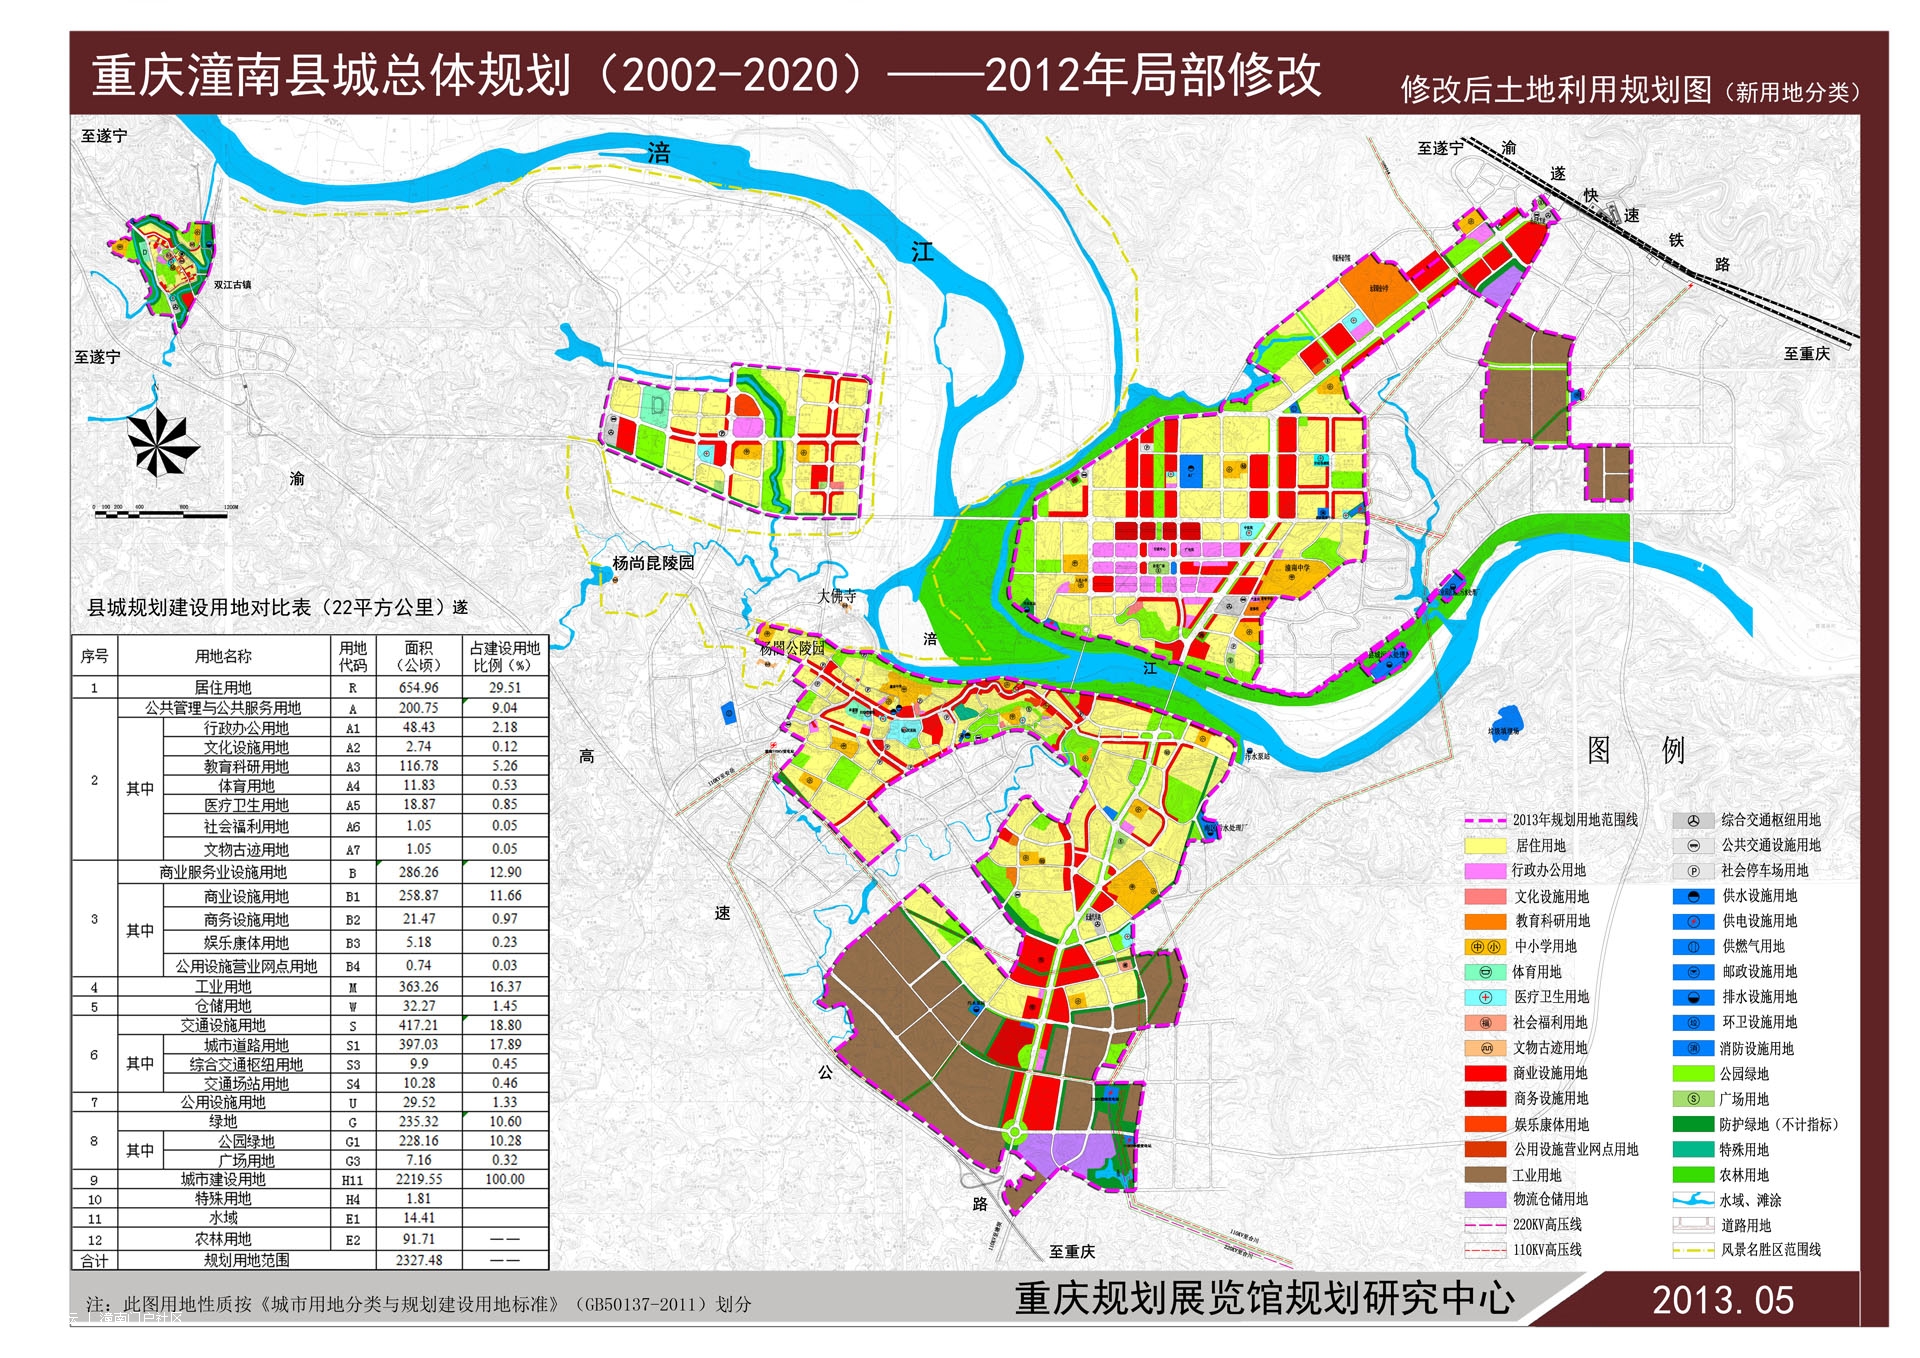 潼南县城总体规划（2002-2020）2012年局部修改方案 20137239410158 1920x.jpg